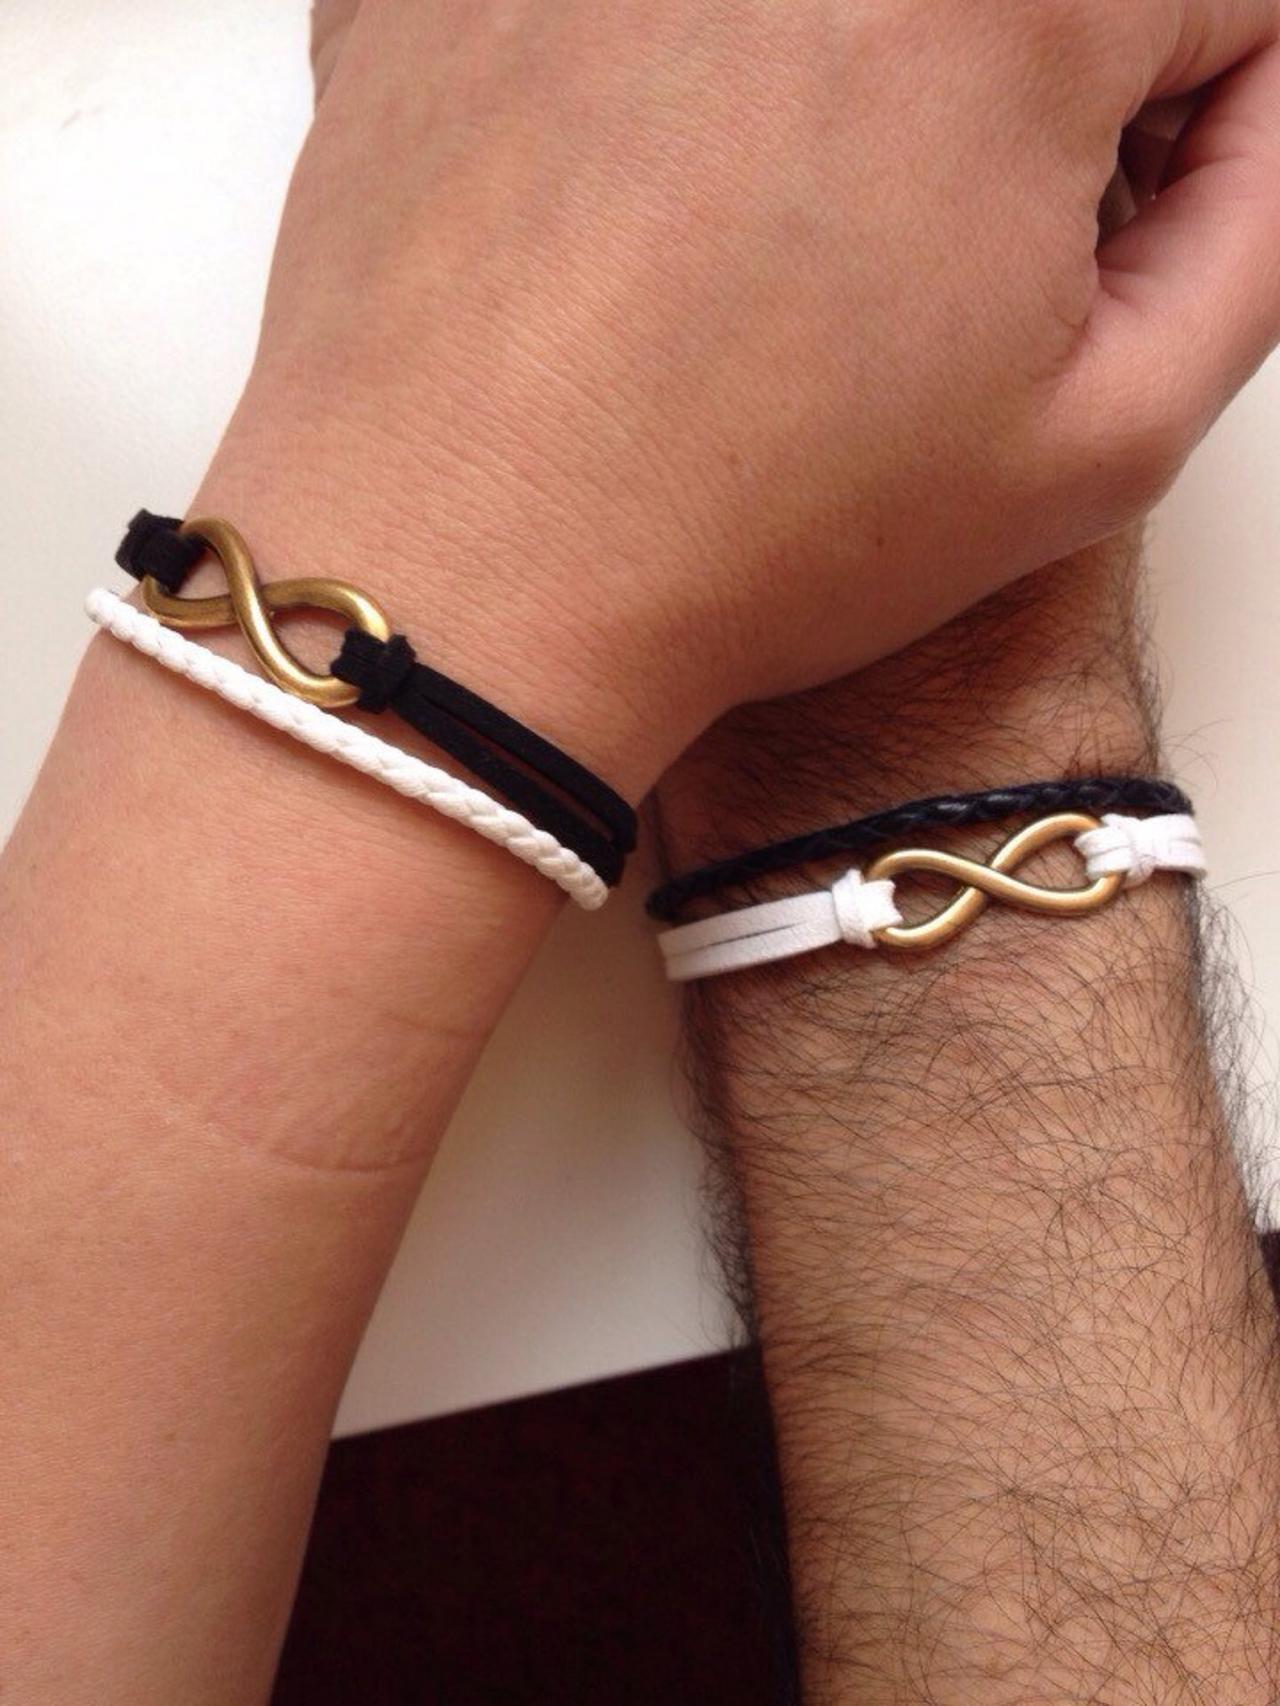 Couples Men Women Bracelets 147- Friendship Love Cuff Infinity Yin And Yang Bracelet Leather Braid Gift Boyfriend Girlfriend